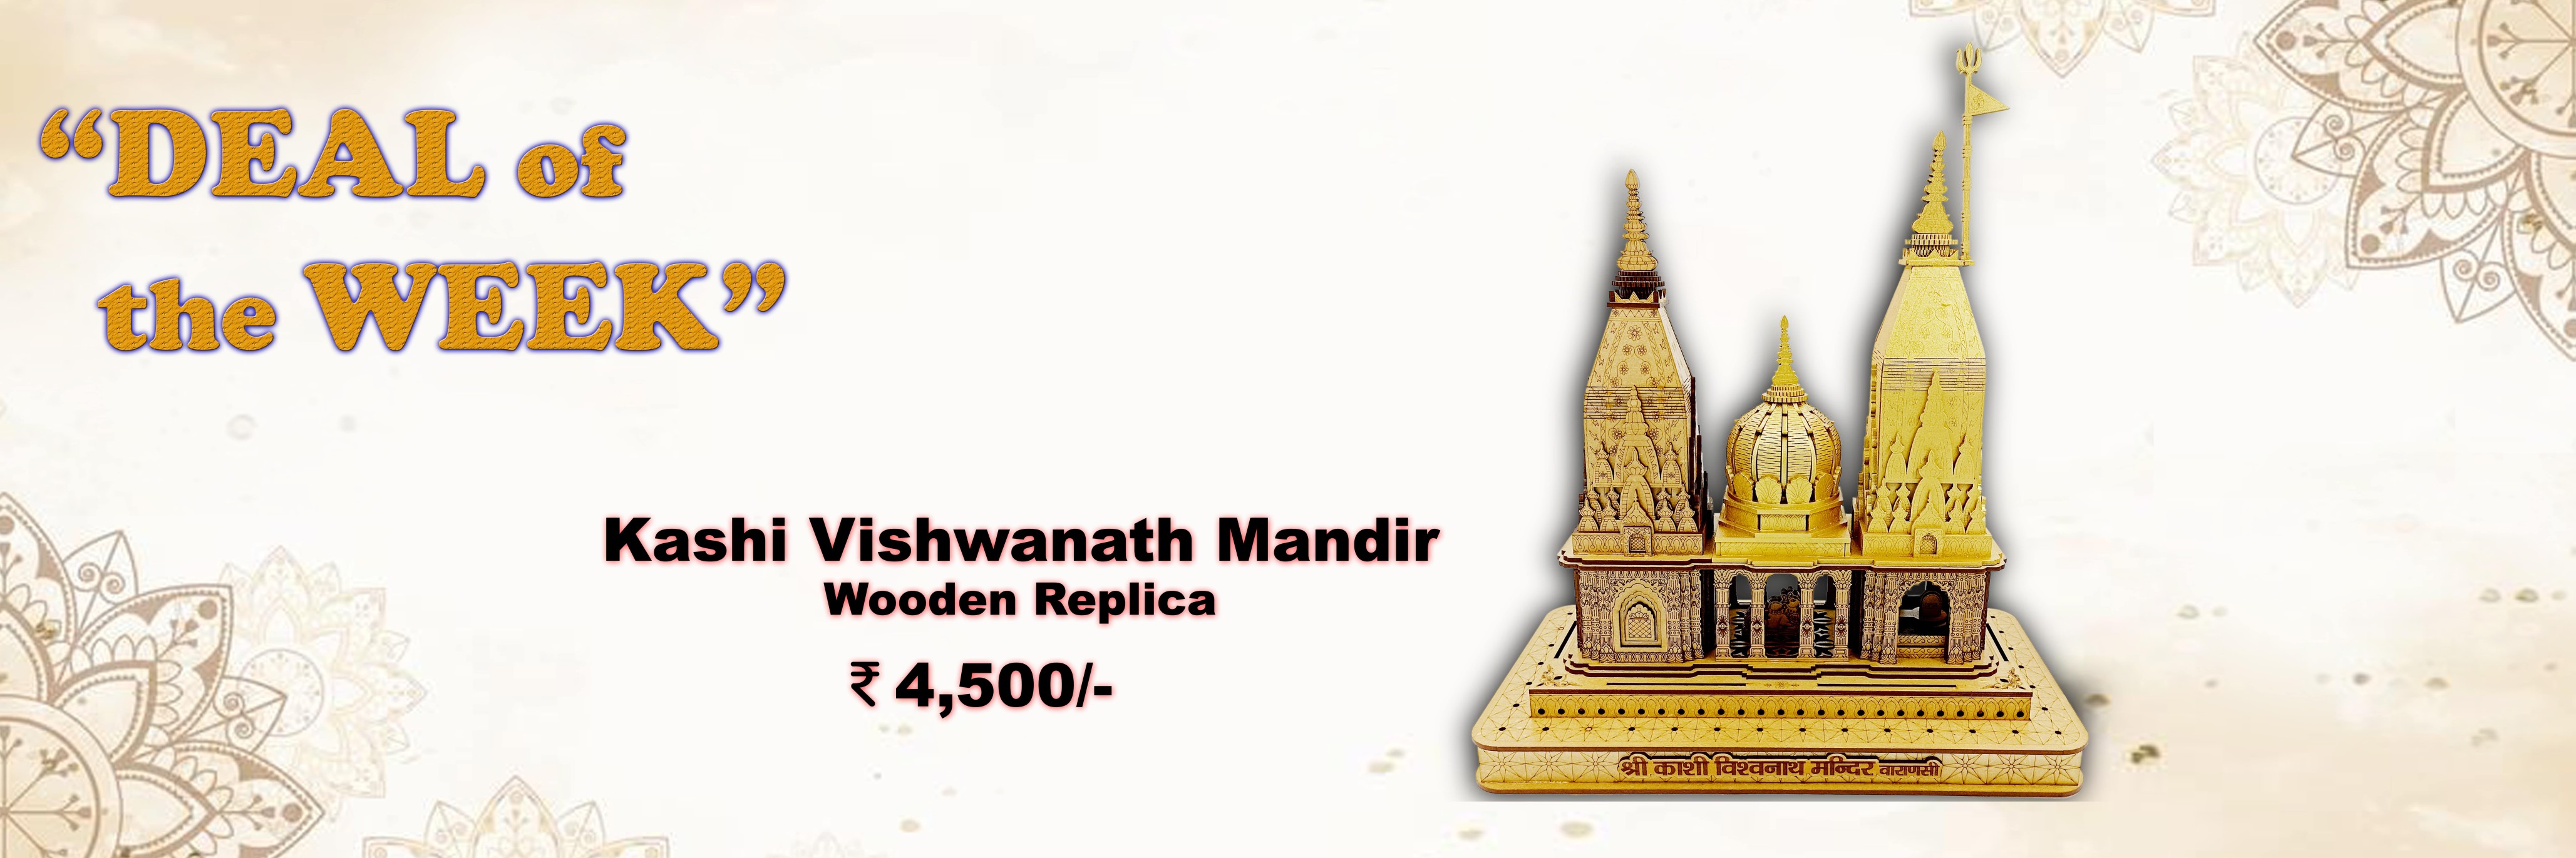 Kashi Vishwanath Mandir 3 Shikhar